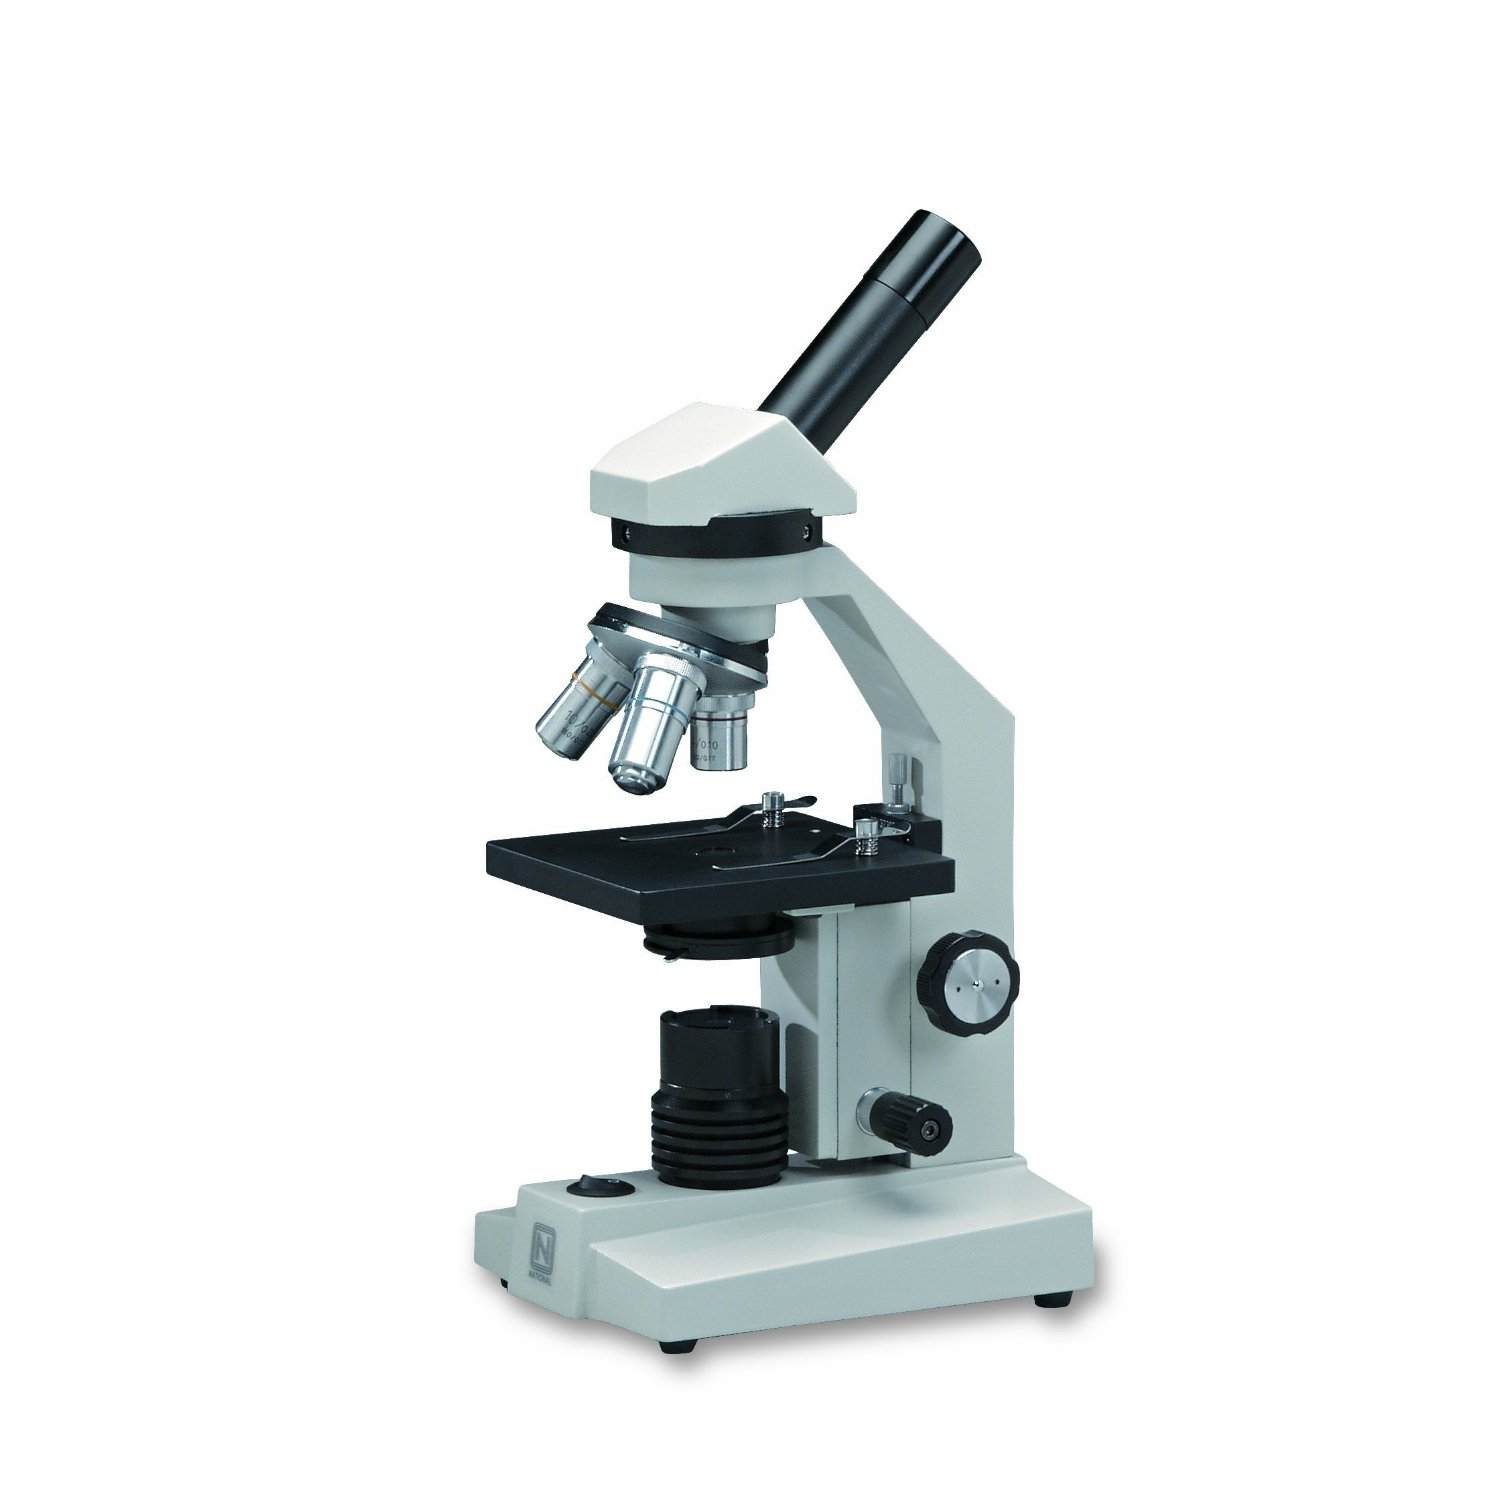 1 прибор типа микроскопа. Микроскопа PV-5100. Цифровой микроскоп детали макровинт. Микроскоп Микромед двухкоординатный предметный столик. Окуляр микроскопа универсального УИМ.